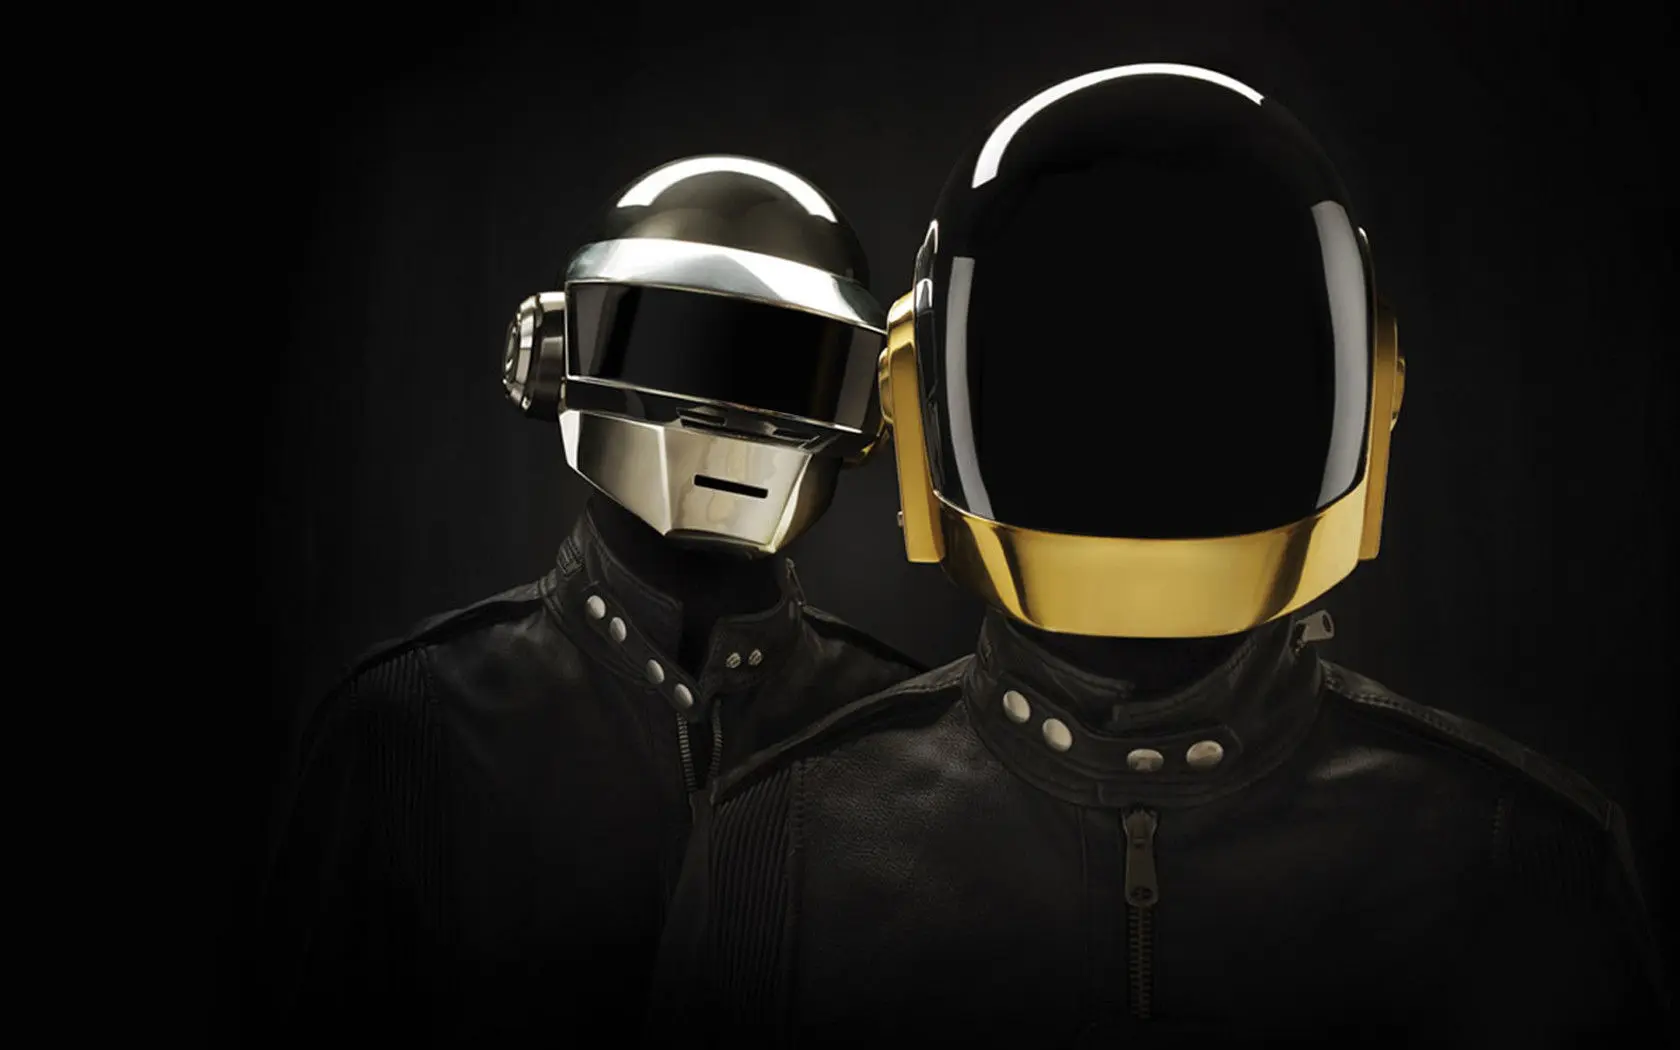 Daft Punk : une composition en avril selon Nile Rodgers